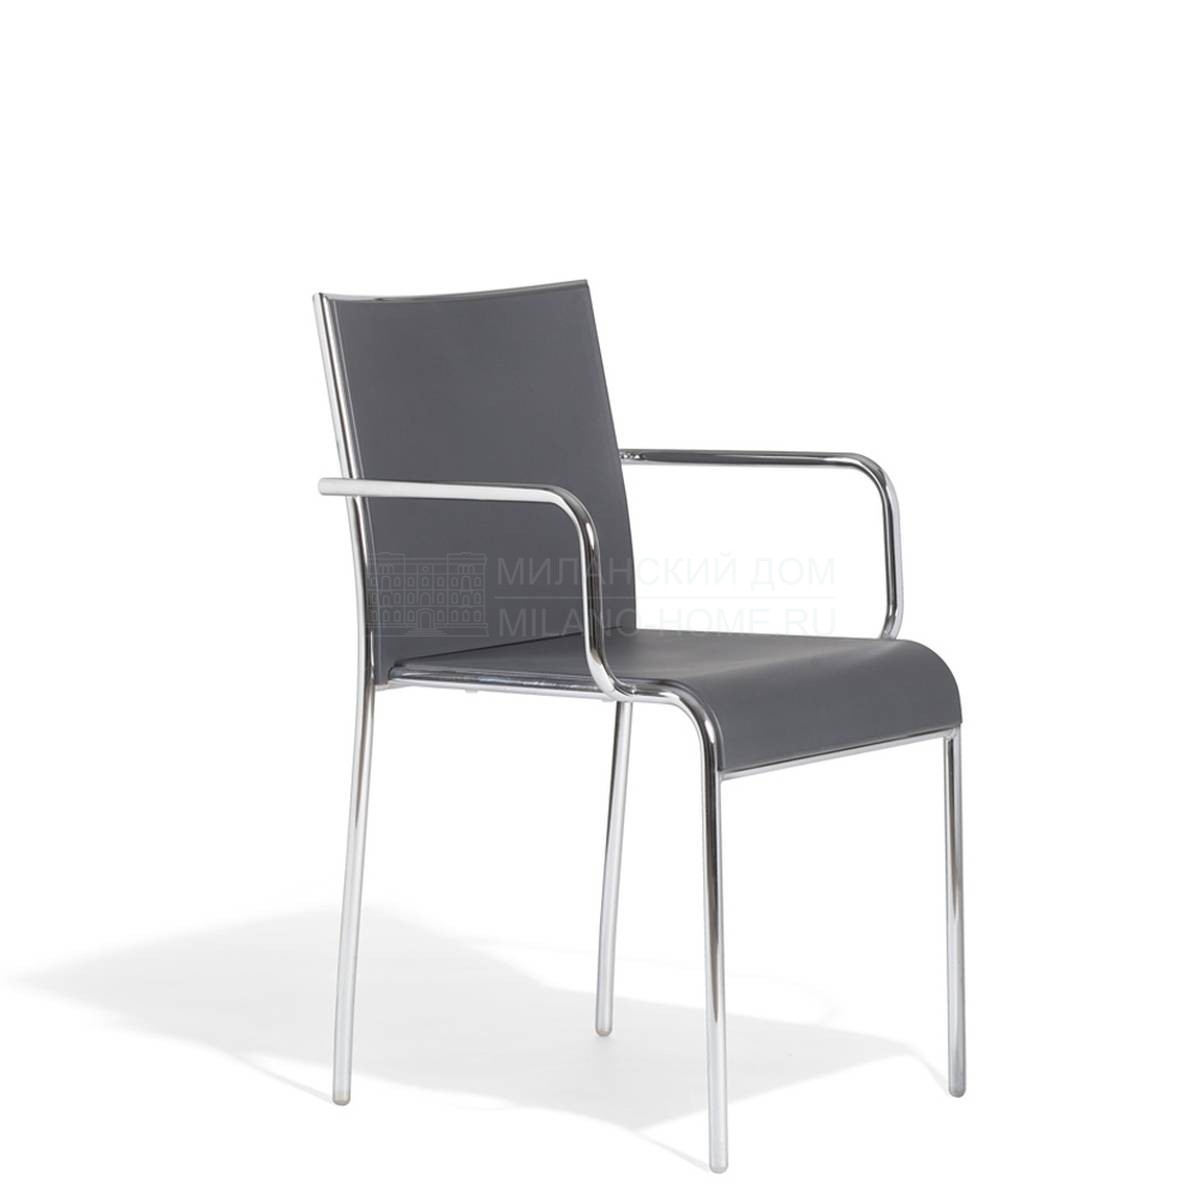 Металлический / Пластиковый стул Alin/696/P из Италии фабрики POTOCCO